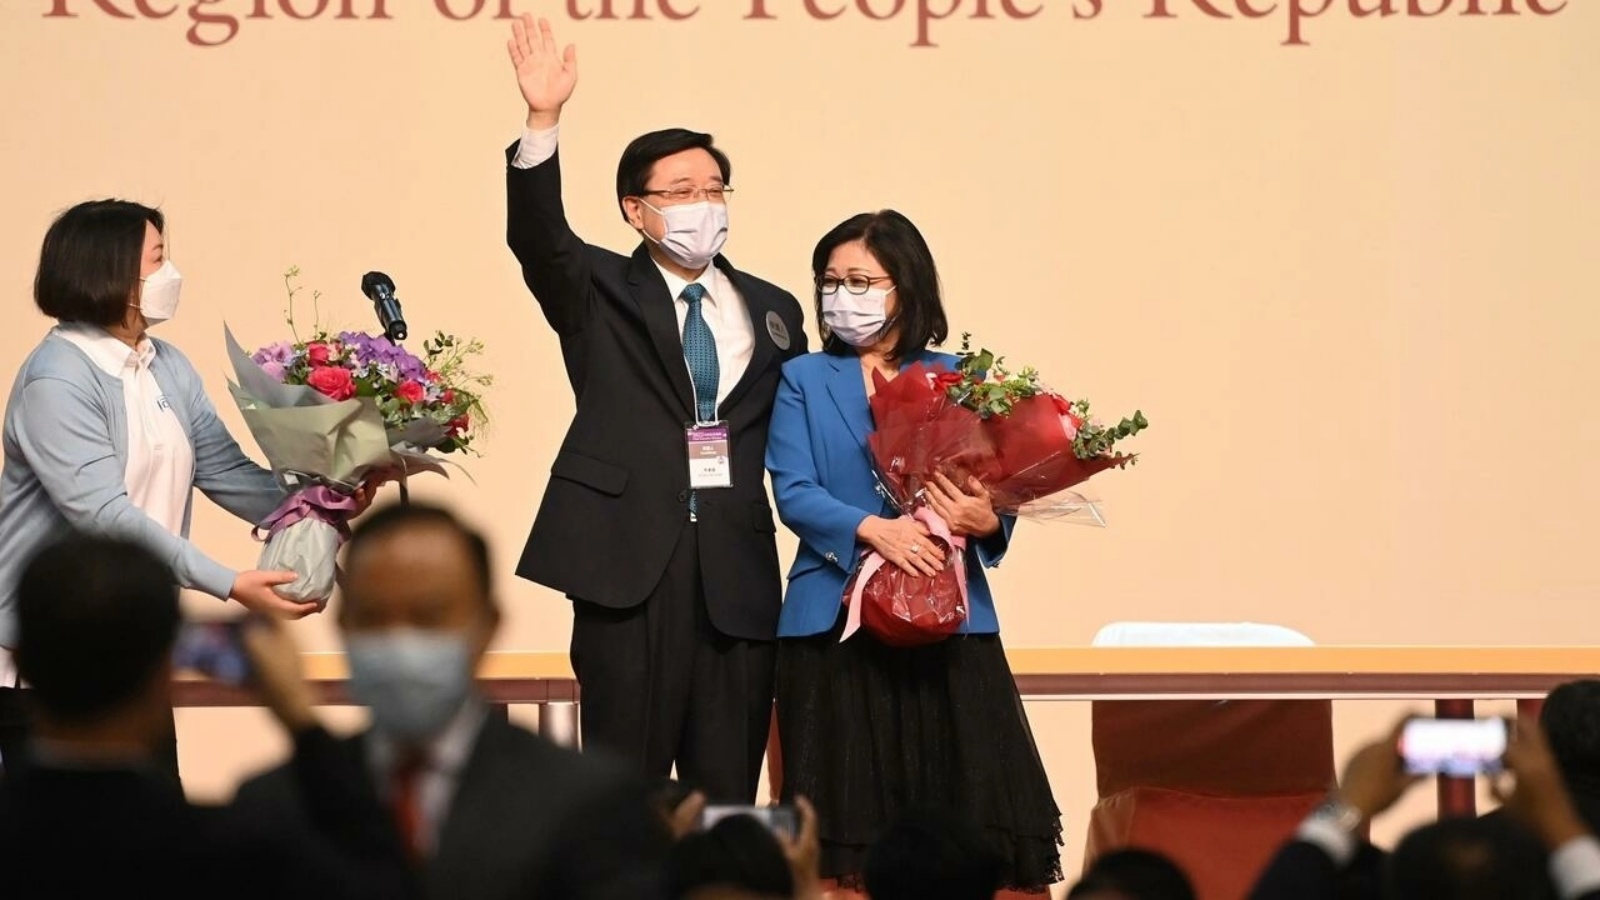 جون لي يحتفل مع زوجته جانيت بتعيينه على رأس السلطة التنفيذية في هونغ كونغ في 8 مايو 2022